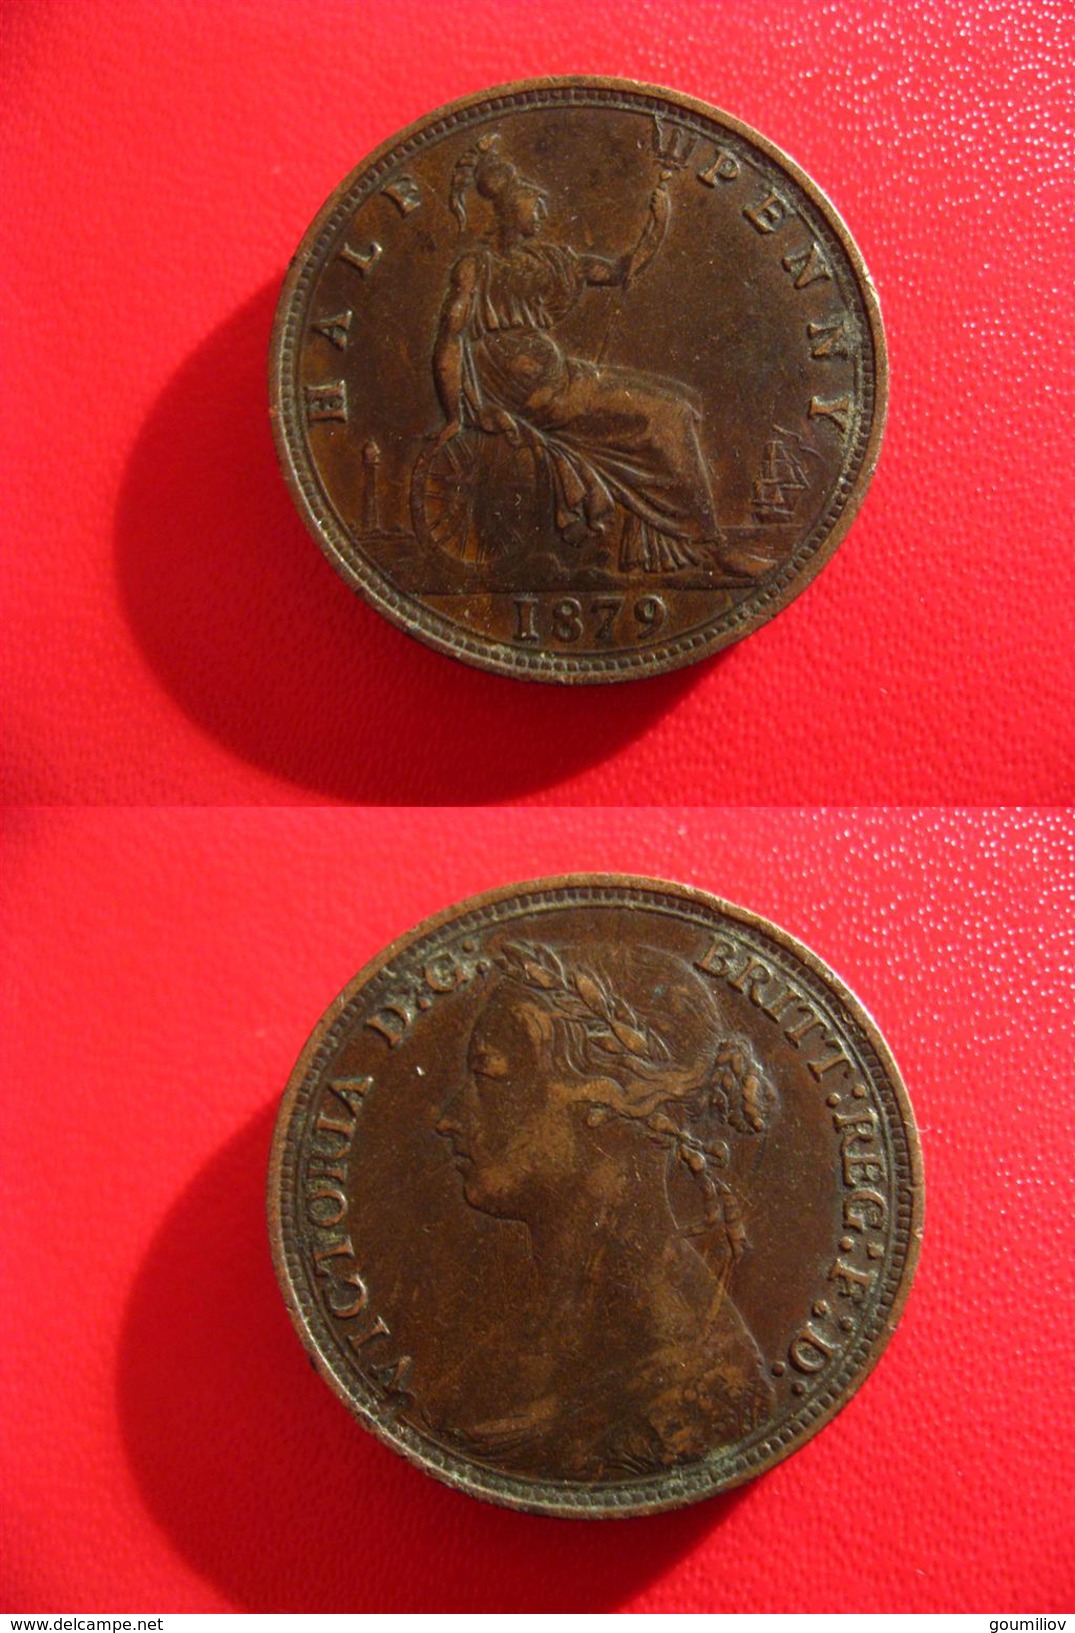 Grande-Bretagne - Great Britain - Half Penny 1879 4351 - C. 1/2 Penny